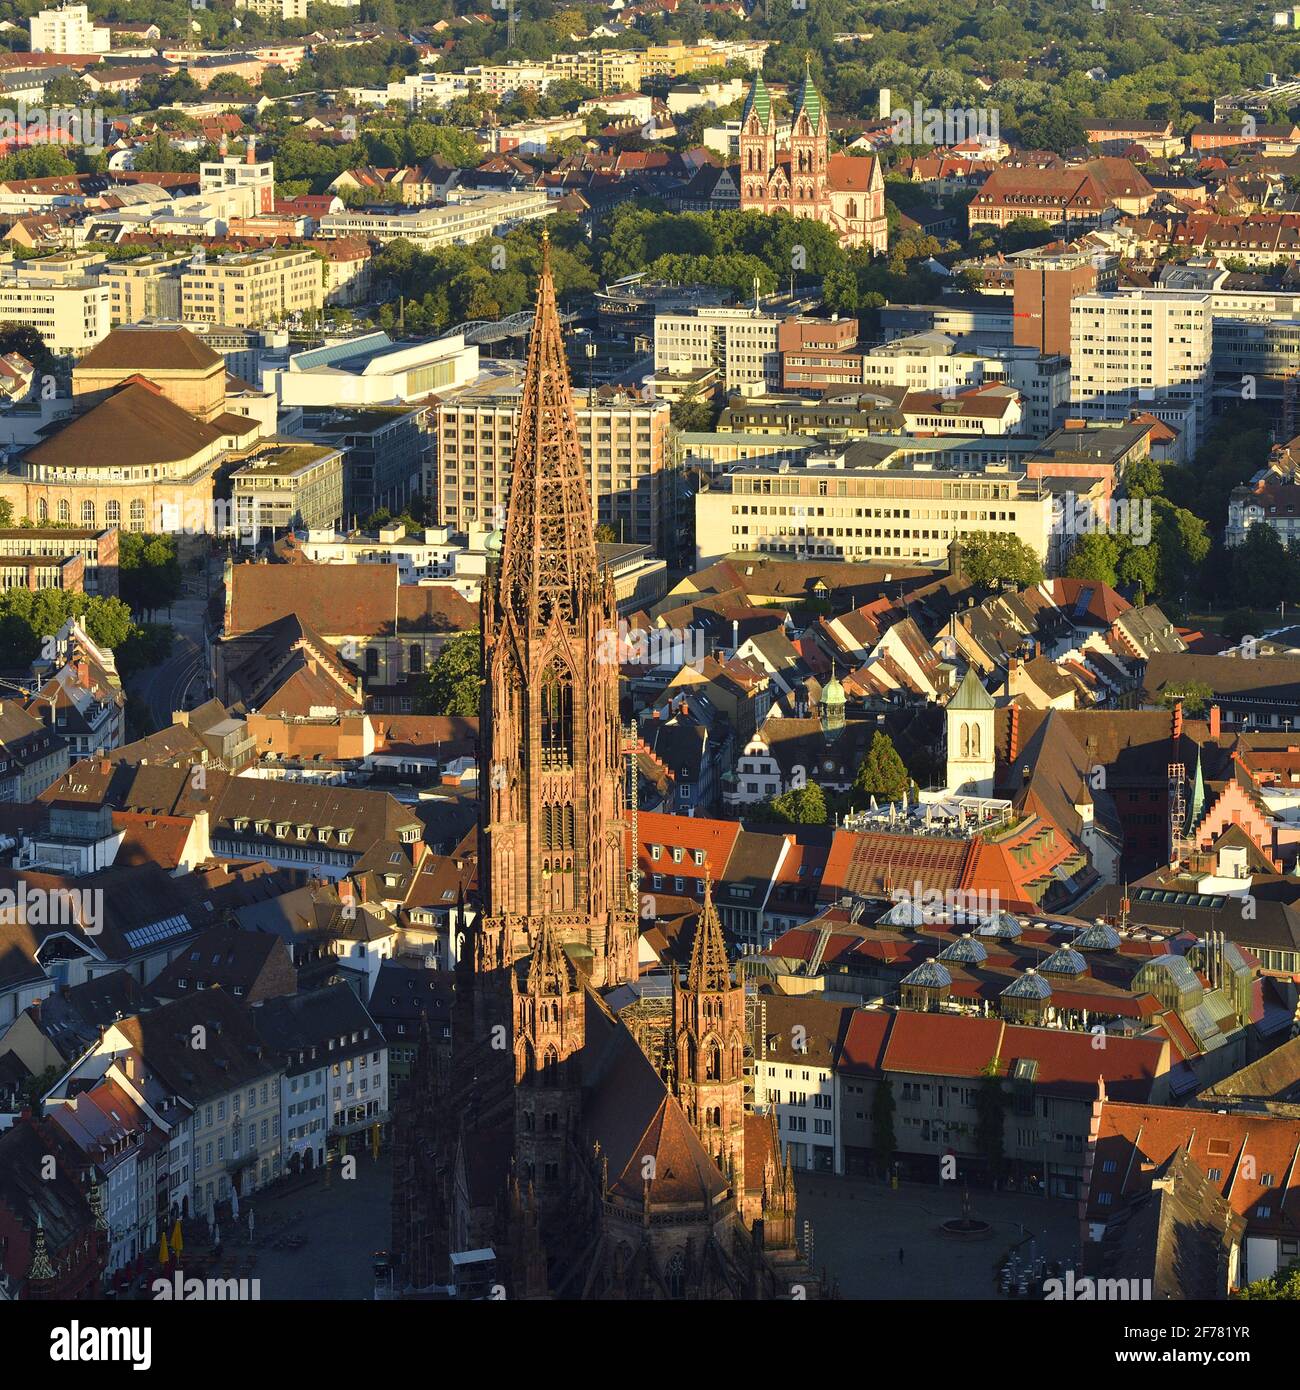 Germania, Baden Wurttemberg, Freiburg im Breisgau, vista dal Schlossberg con la cattedrale (Münster) e il Sacro cuore della Chiesa di Gesù sullo sfondo Foto Stock